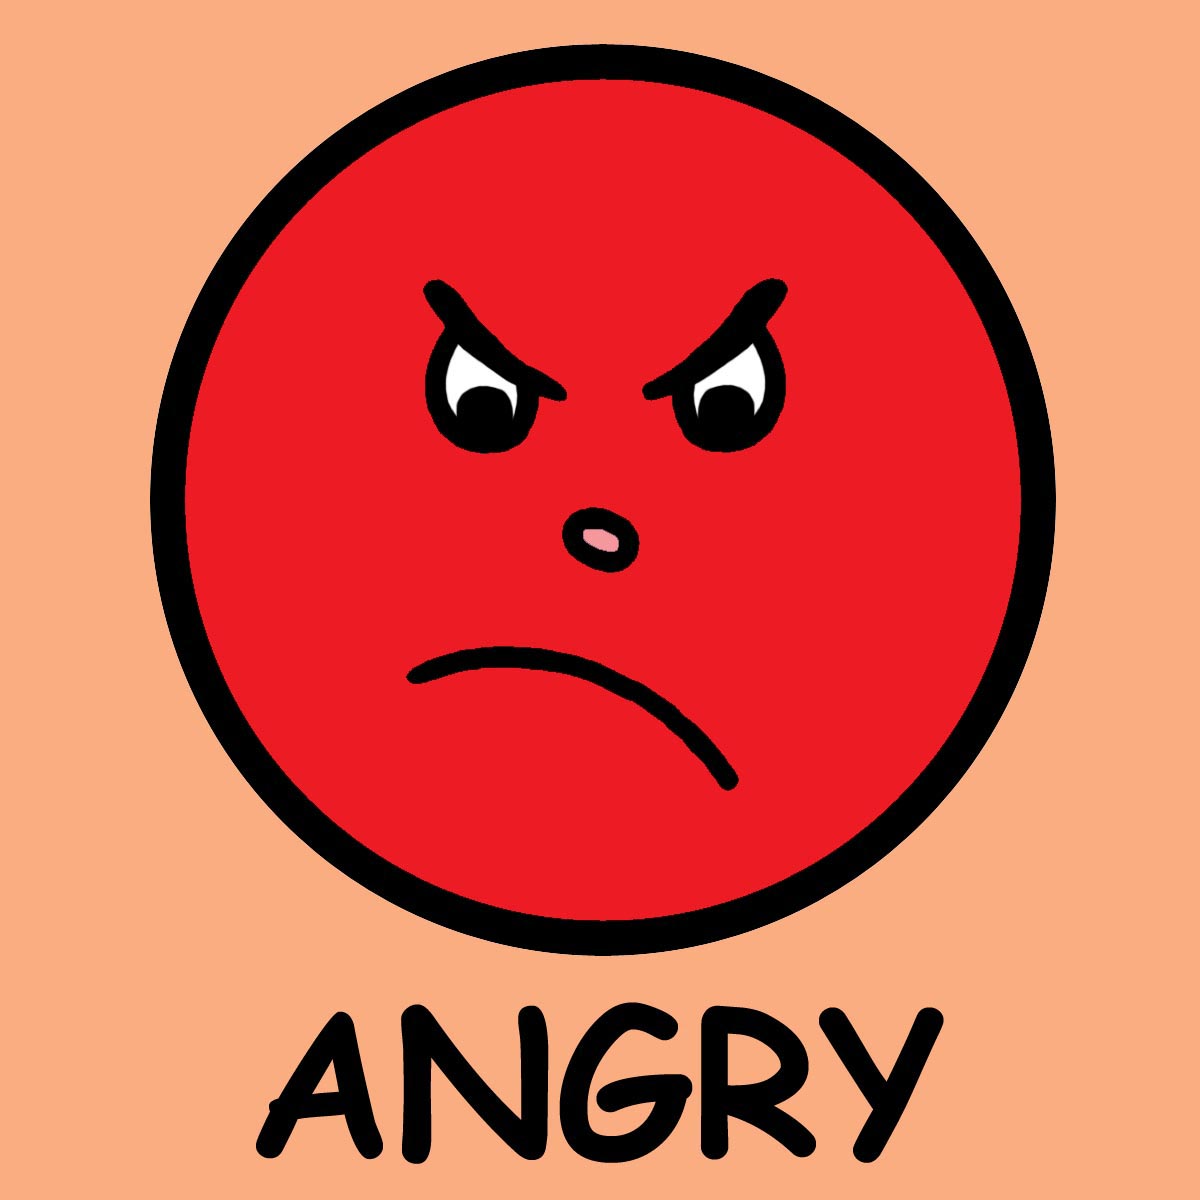 angry-face-clip-art-1010692.jpg